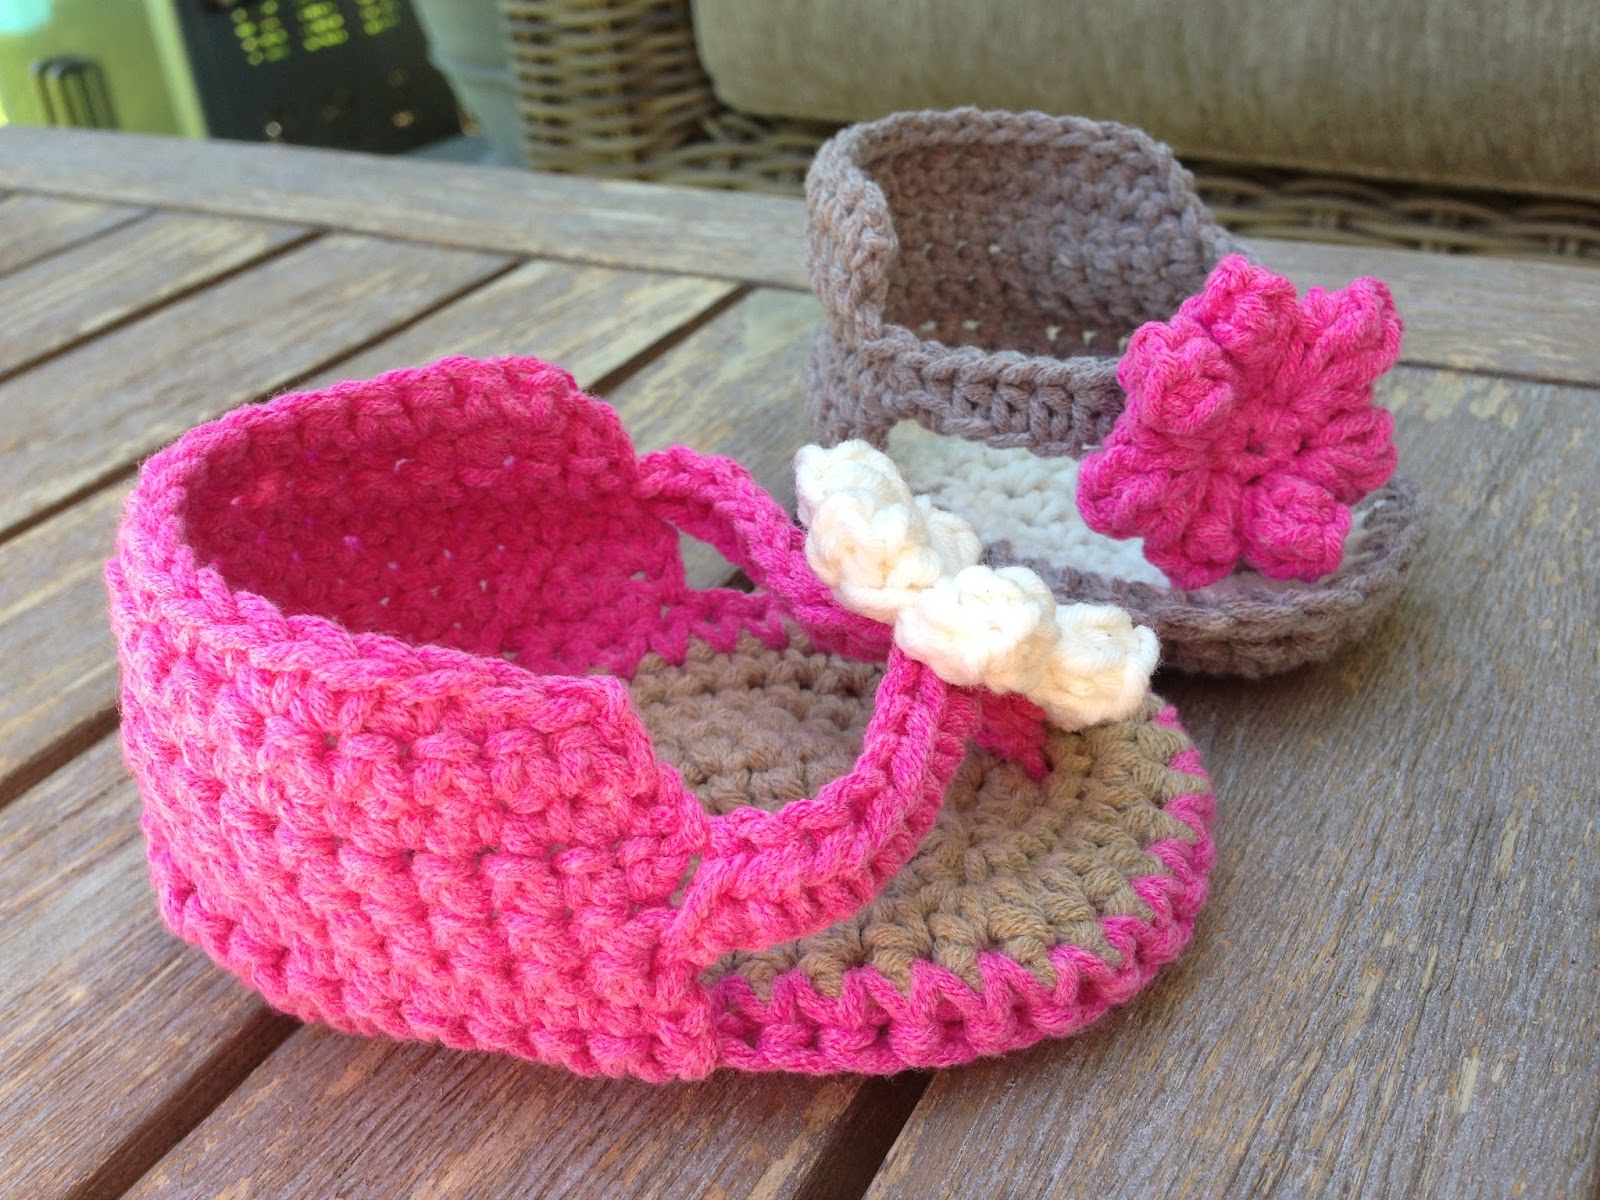 Annoo's Crochet World: Little Lady Booties Free Pattern